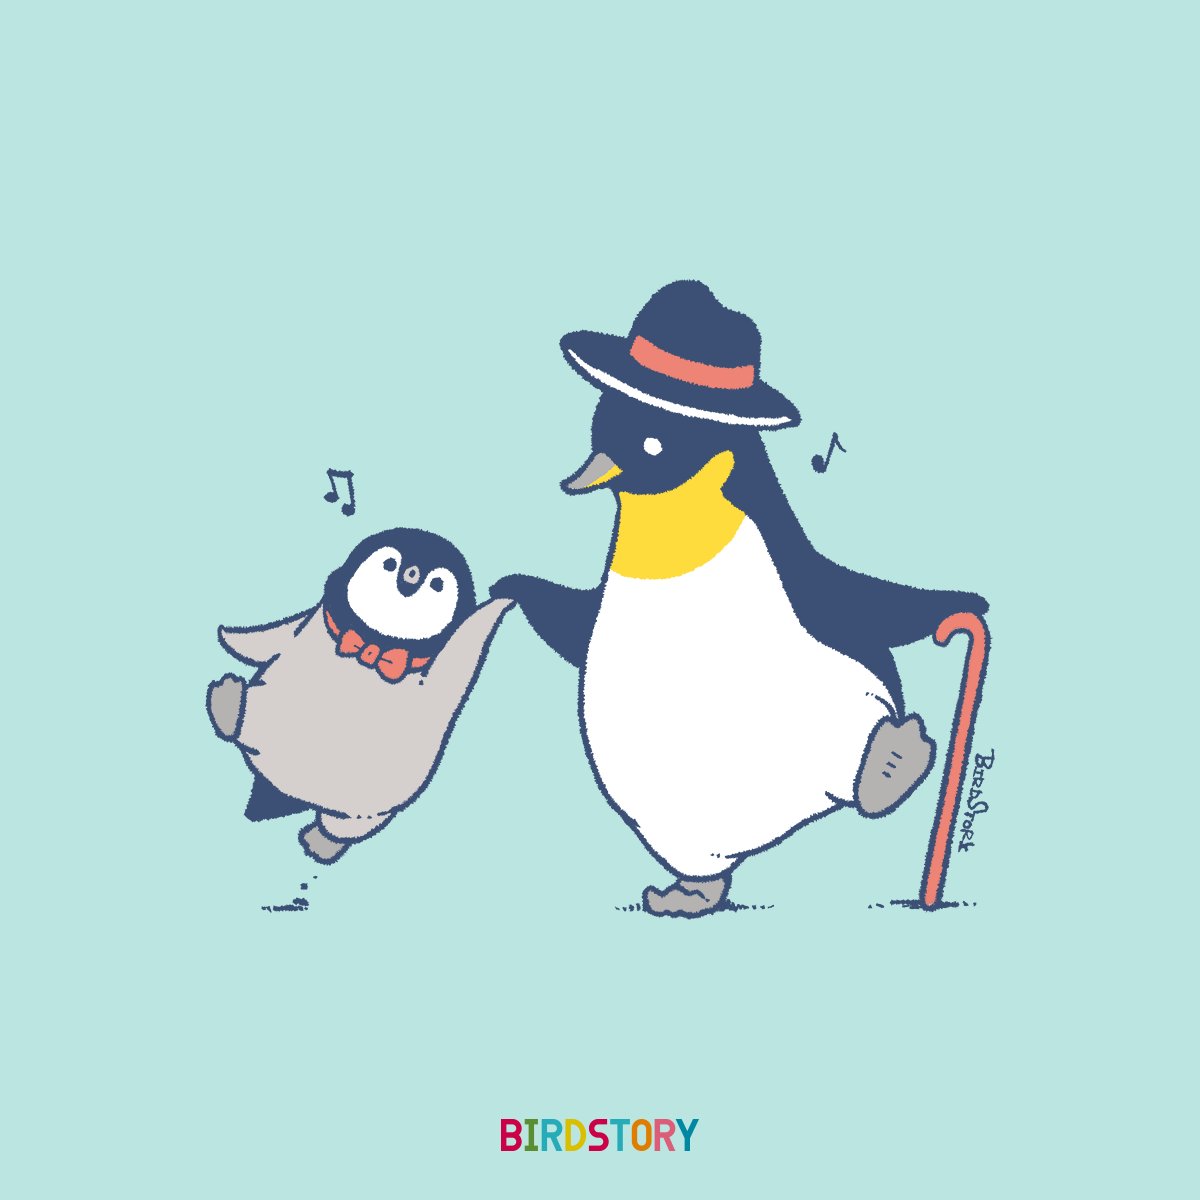 penguin bird no humans cane hat bow bowtie  illustration images